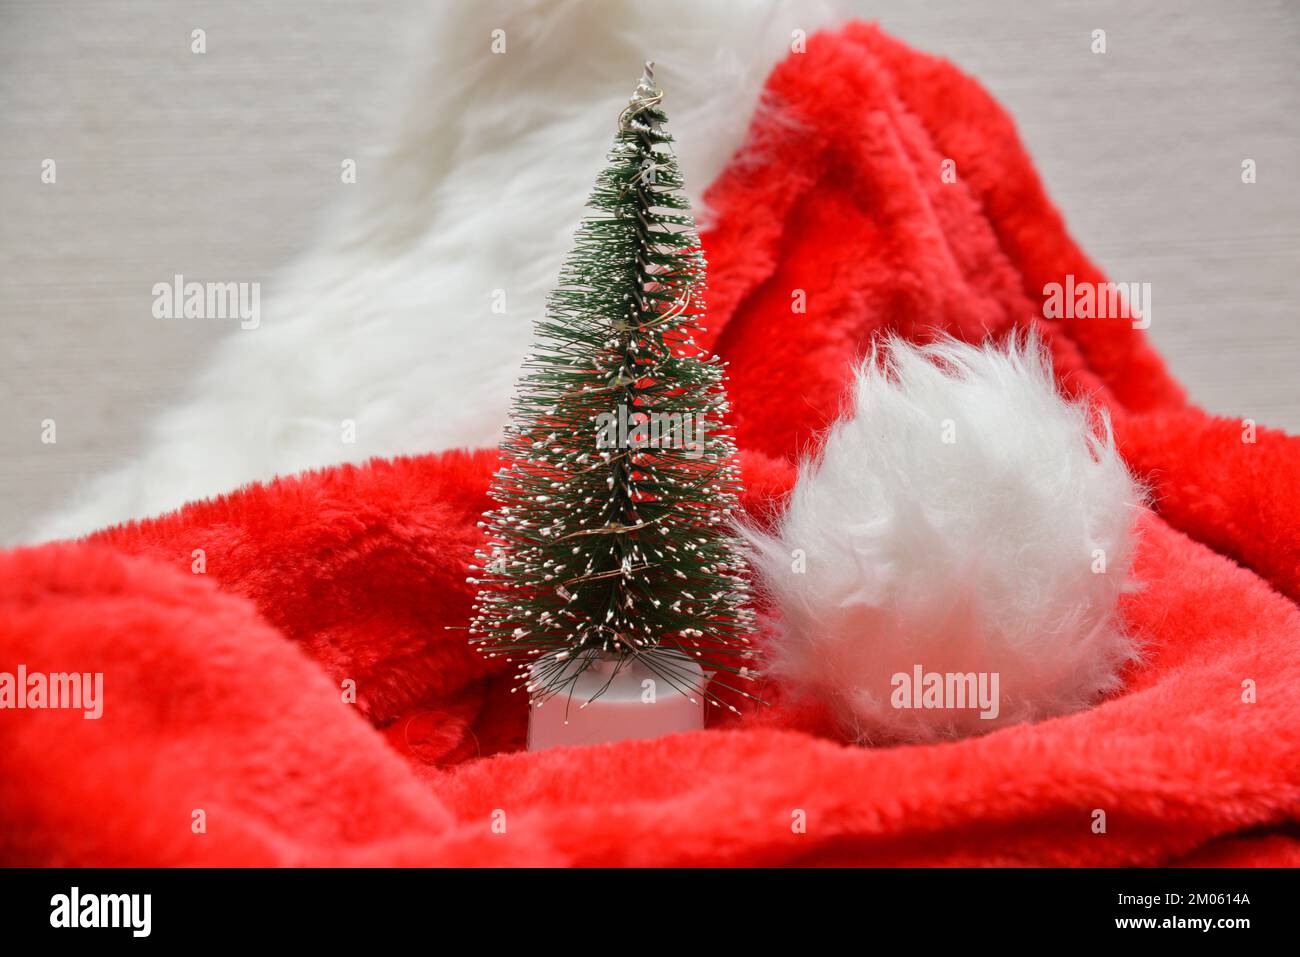 Décorations de Noël. Petit sapin de Noël artificiel recouvert de neige artificielle sur un chapeau rouge du Père Noël. Banque D'Images